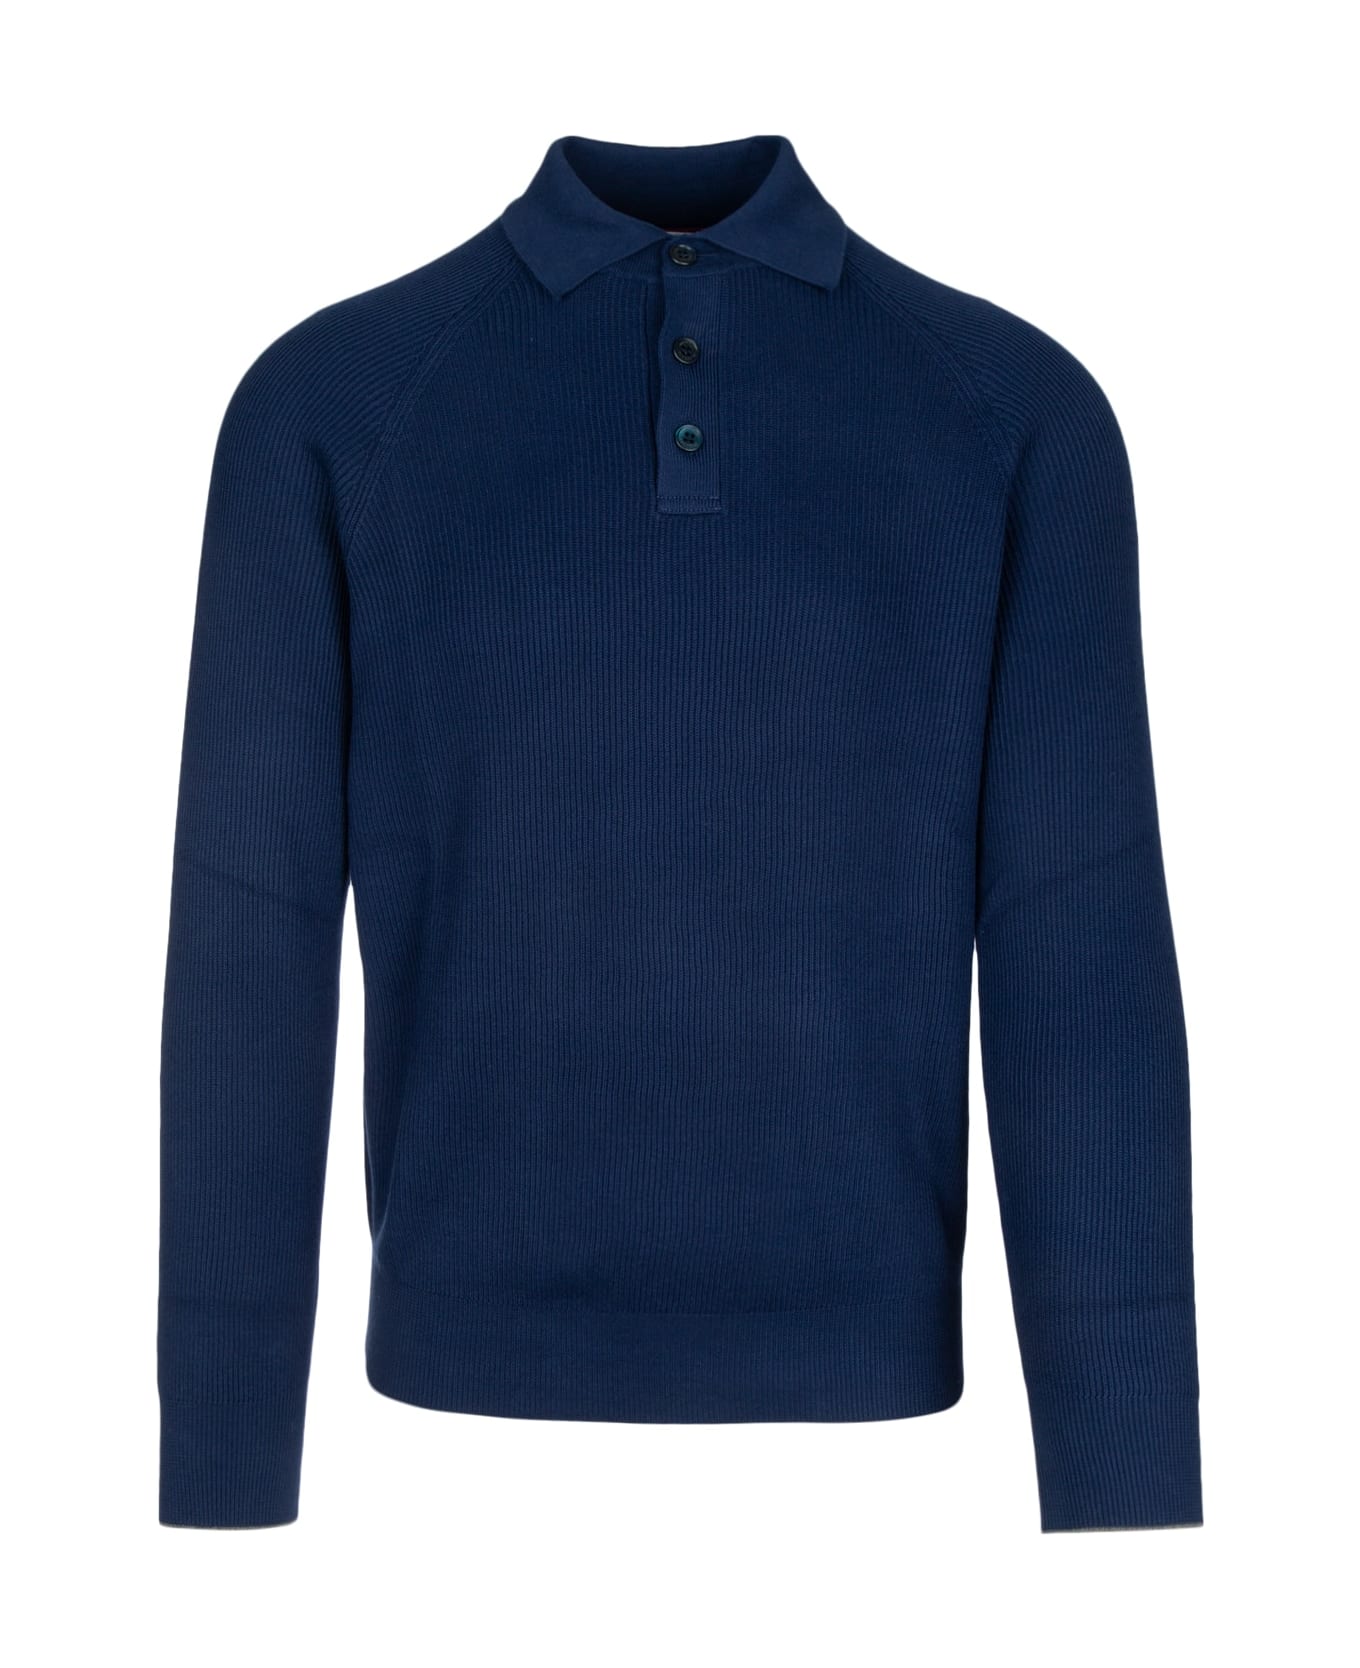 Brunello Cucinelli Polo Sweater - CL598